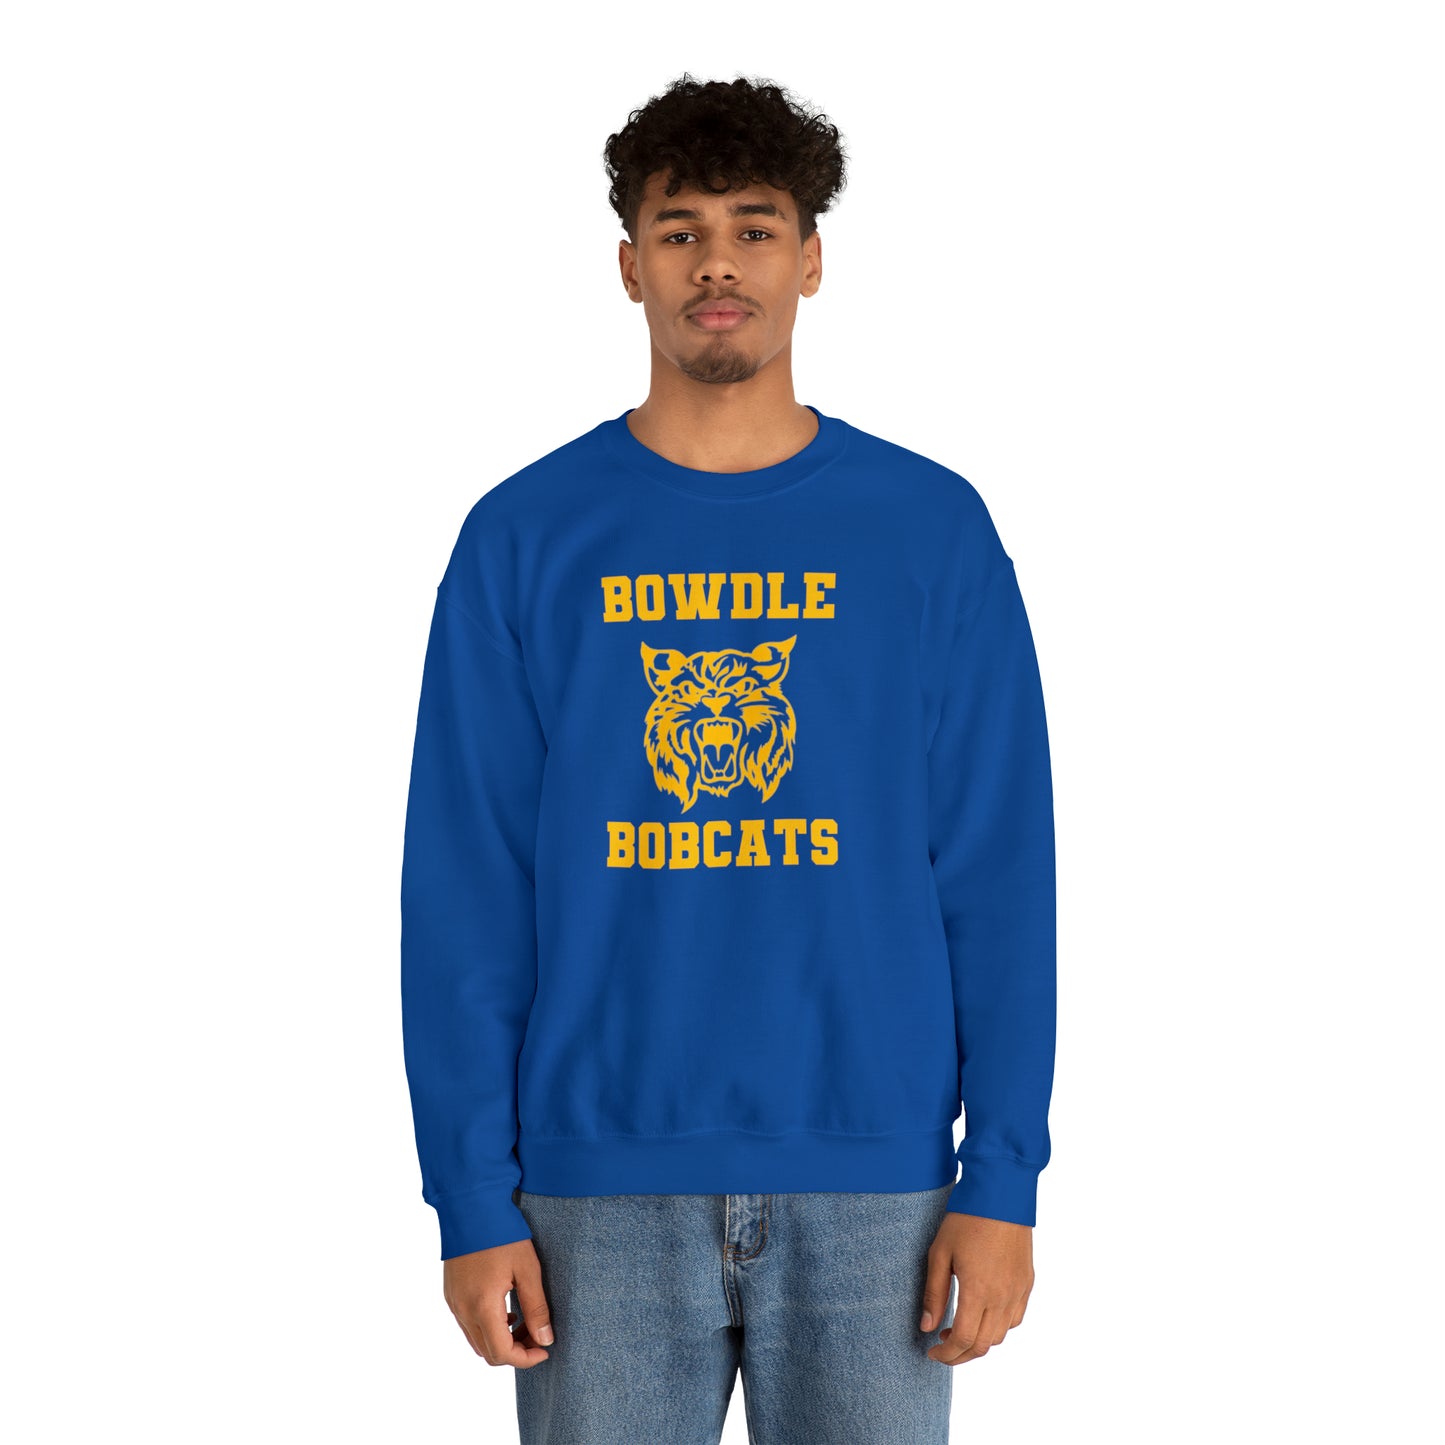 Bowdle Bobcat Throwback Crewneck Sweatshirt